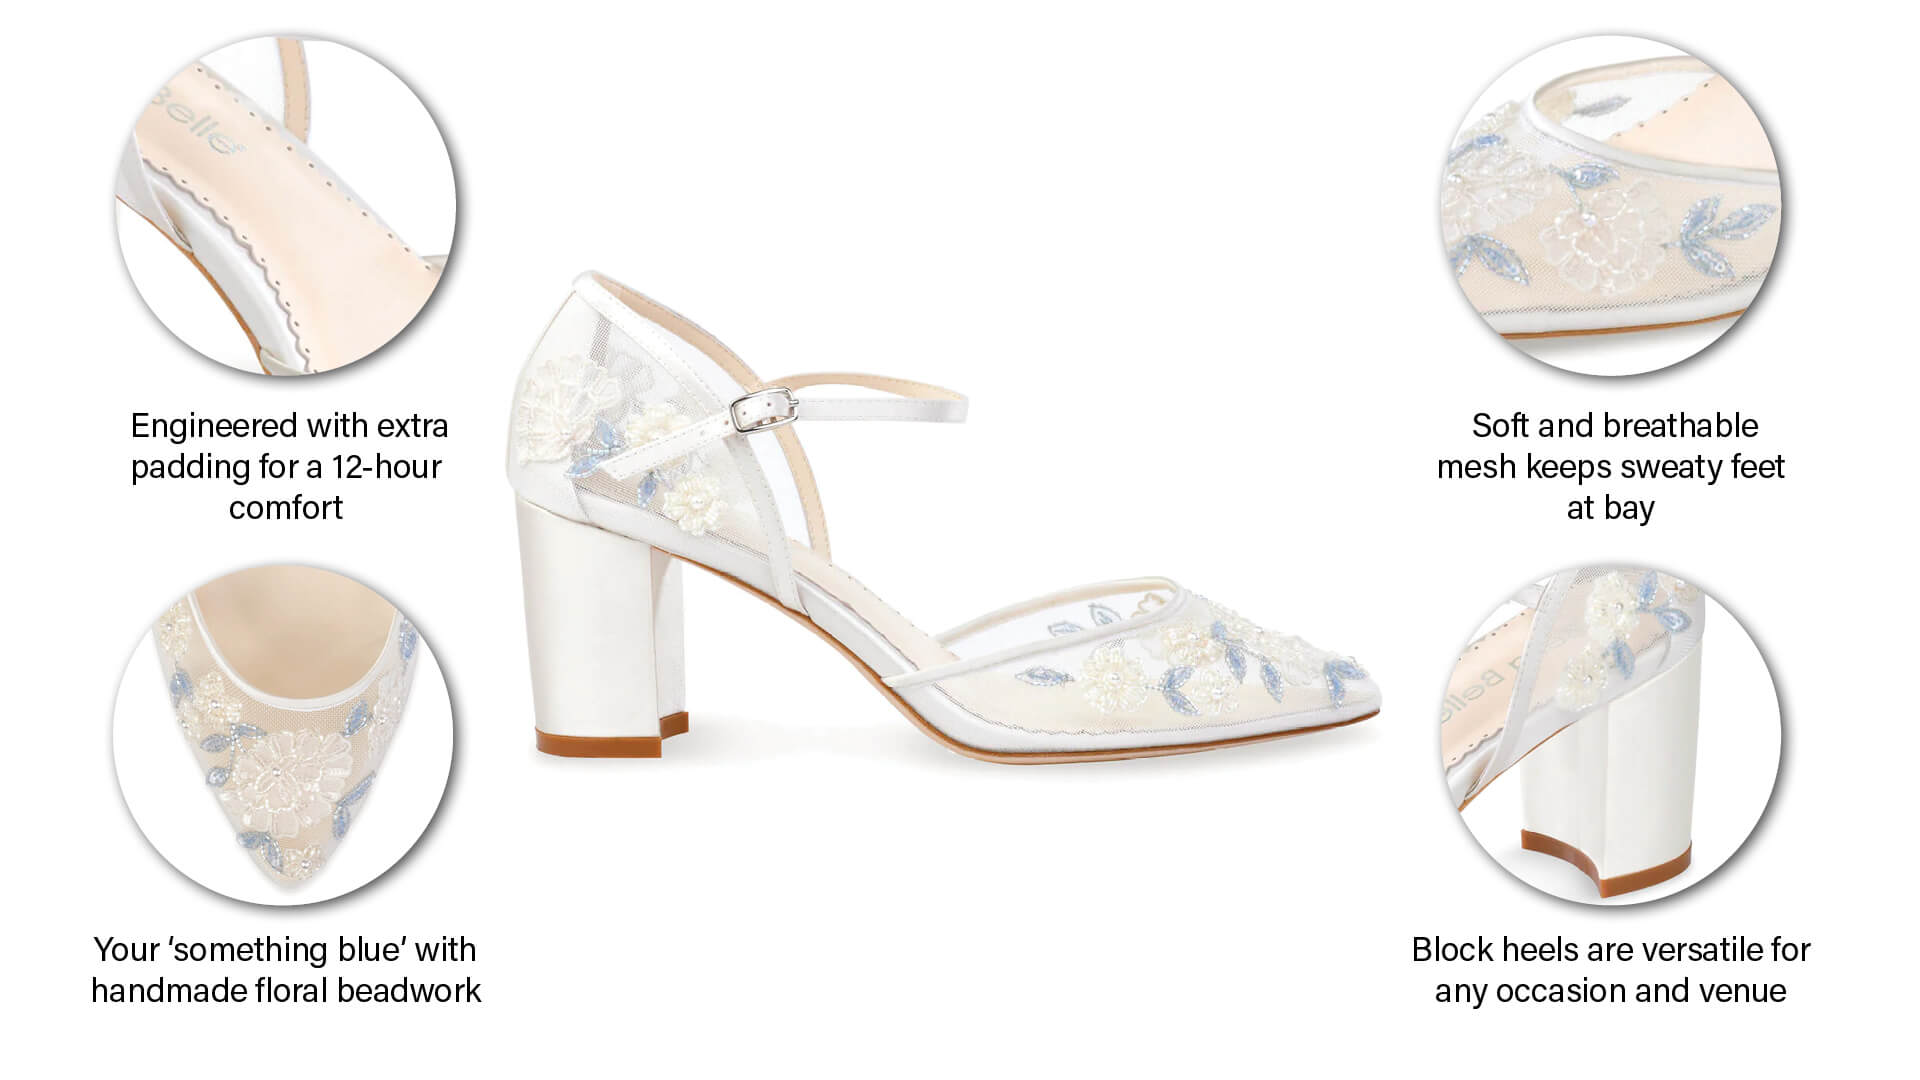 what makes bella belle shoes vivian special